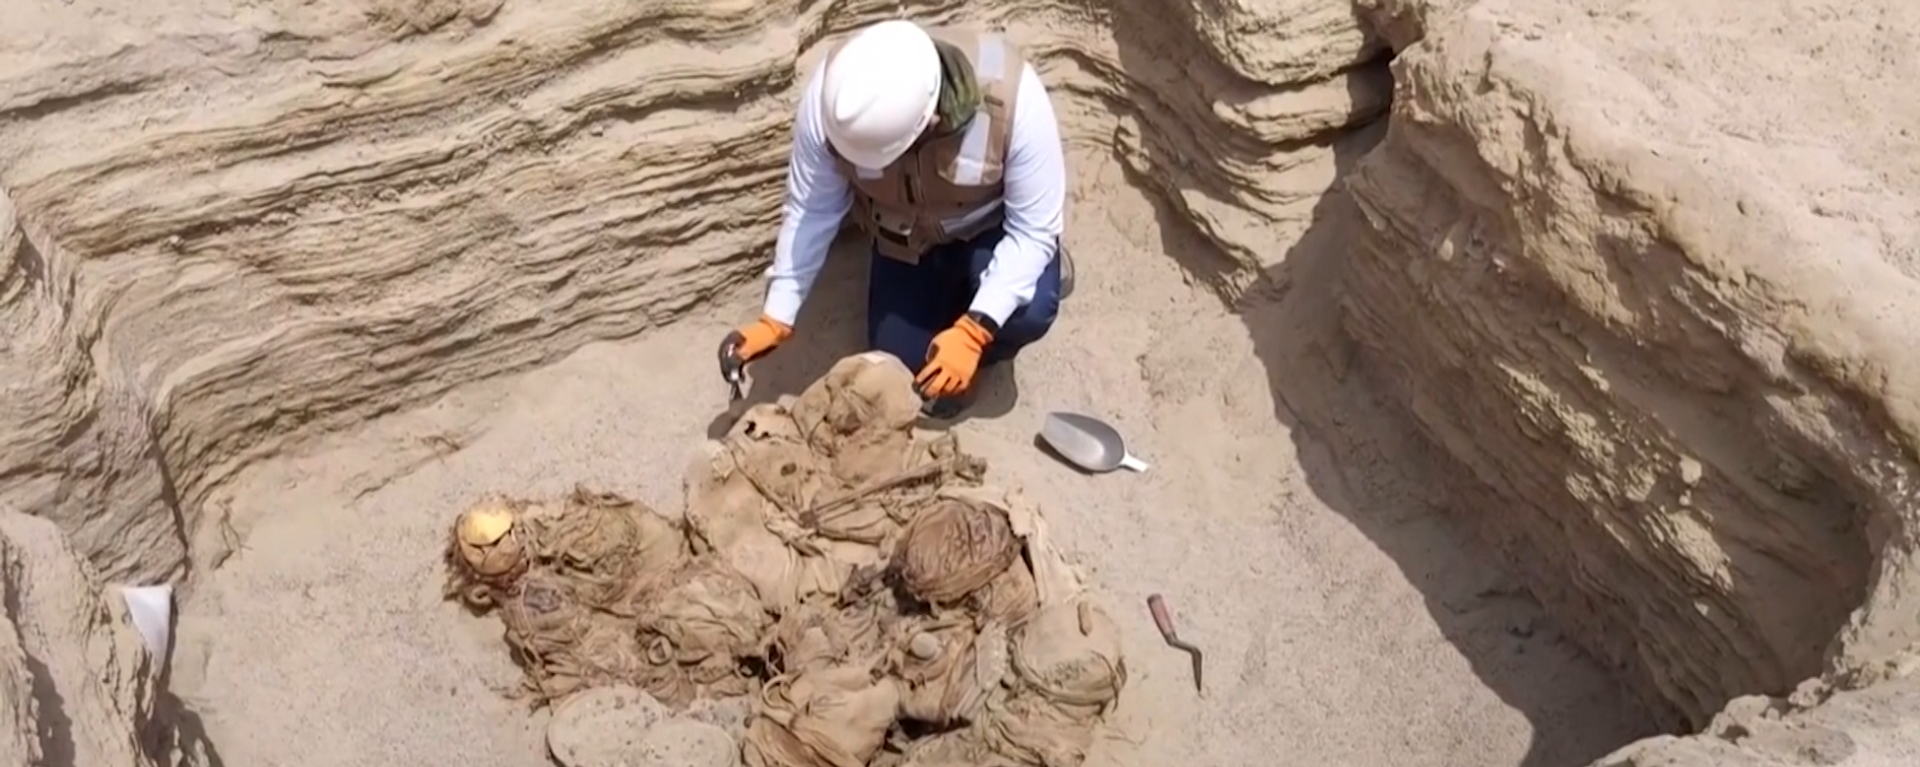 Encuentran en Perú restos humanos de 800 años de antigüedad - Sputnik Mundo, 1920, 24.09.2021